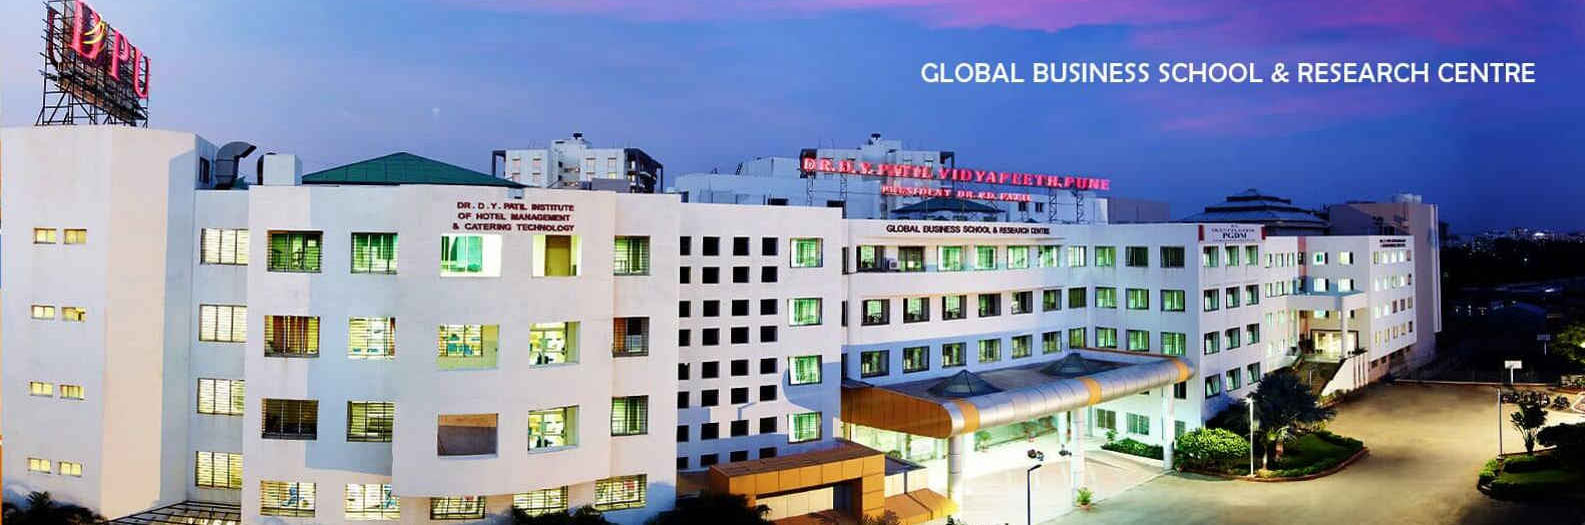 DPU - Global Business School & Research Centre